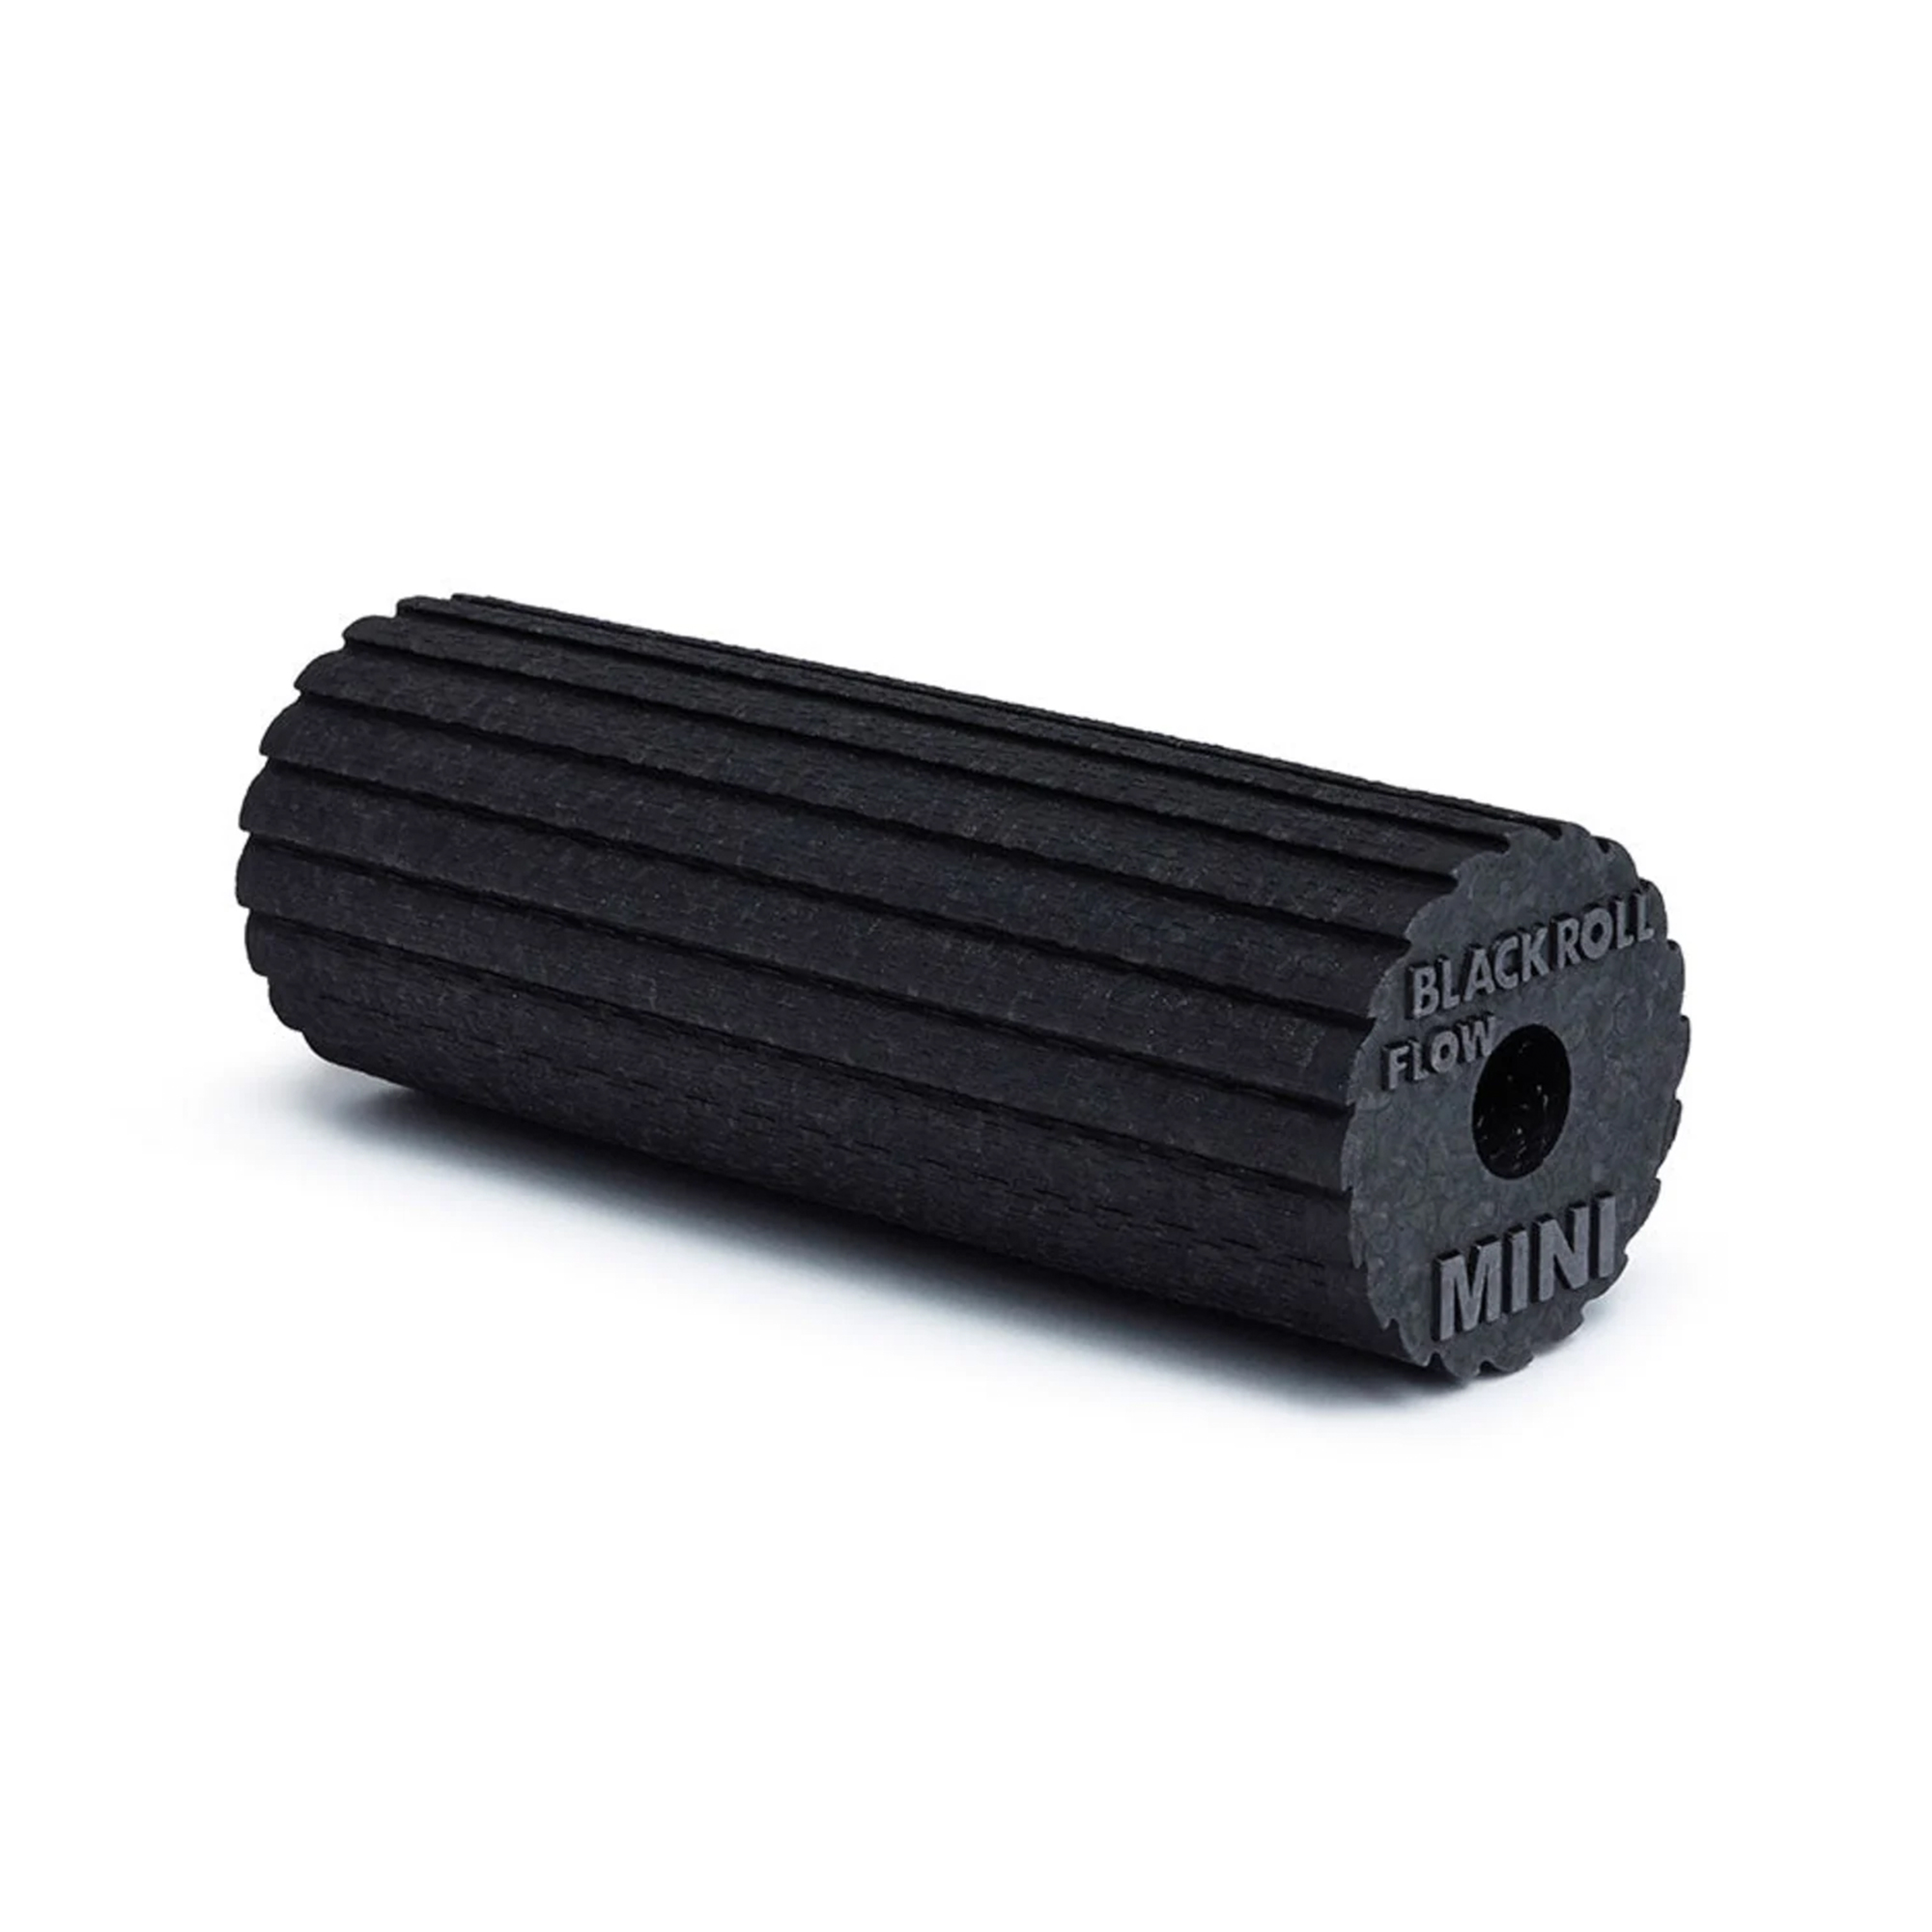 Blackroll Mini Flow Foam Roller - Sort (15 cm x 6 cm)